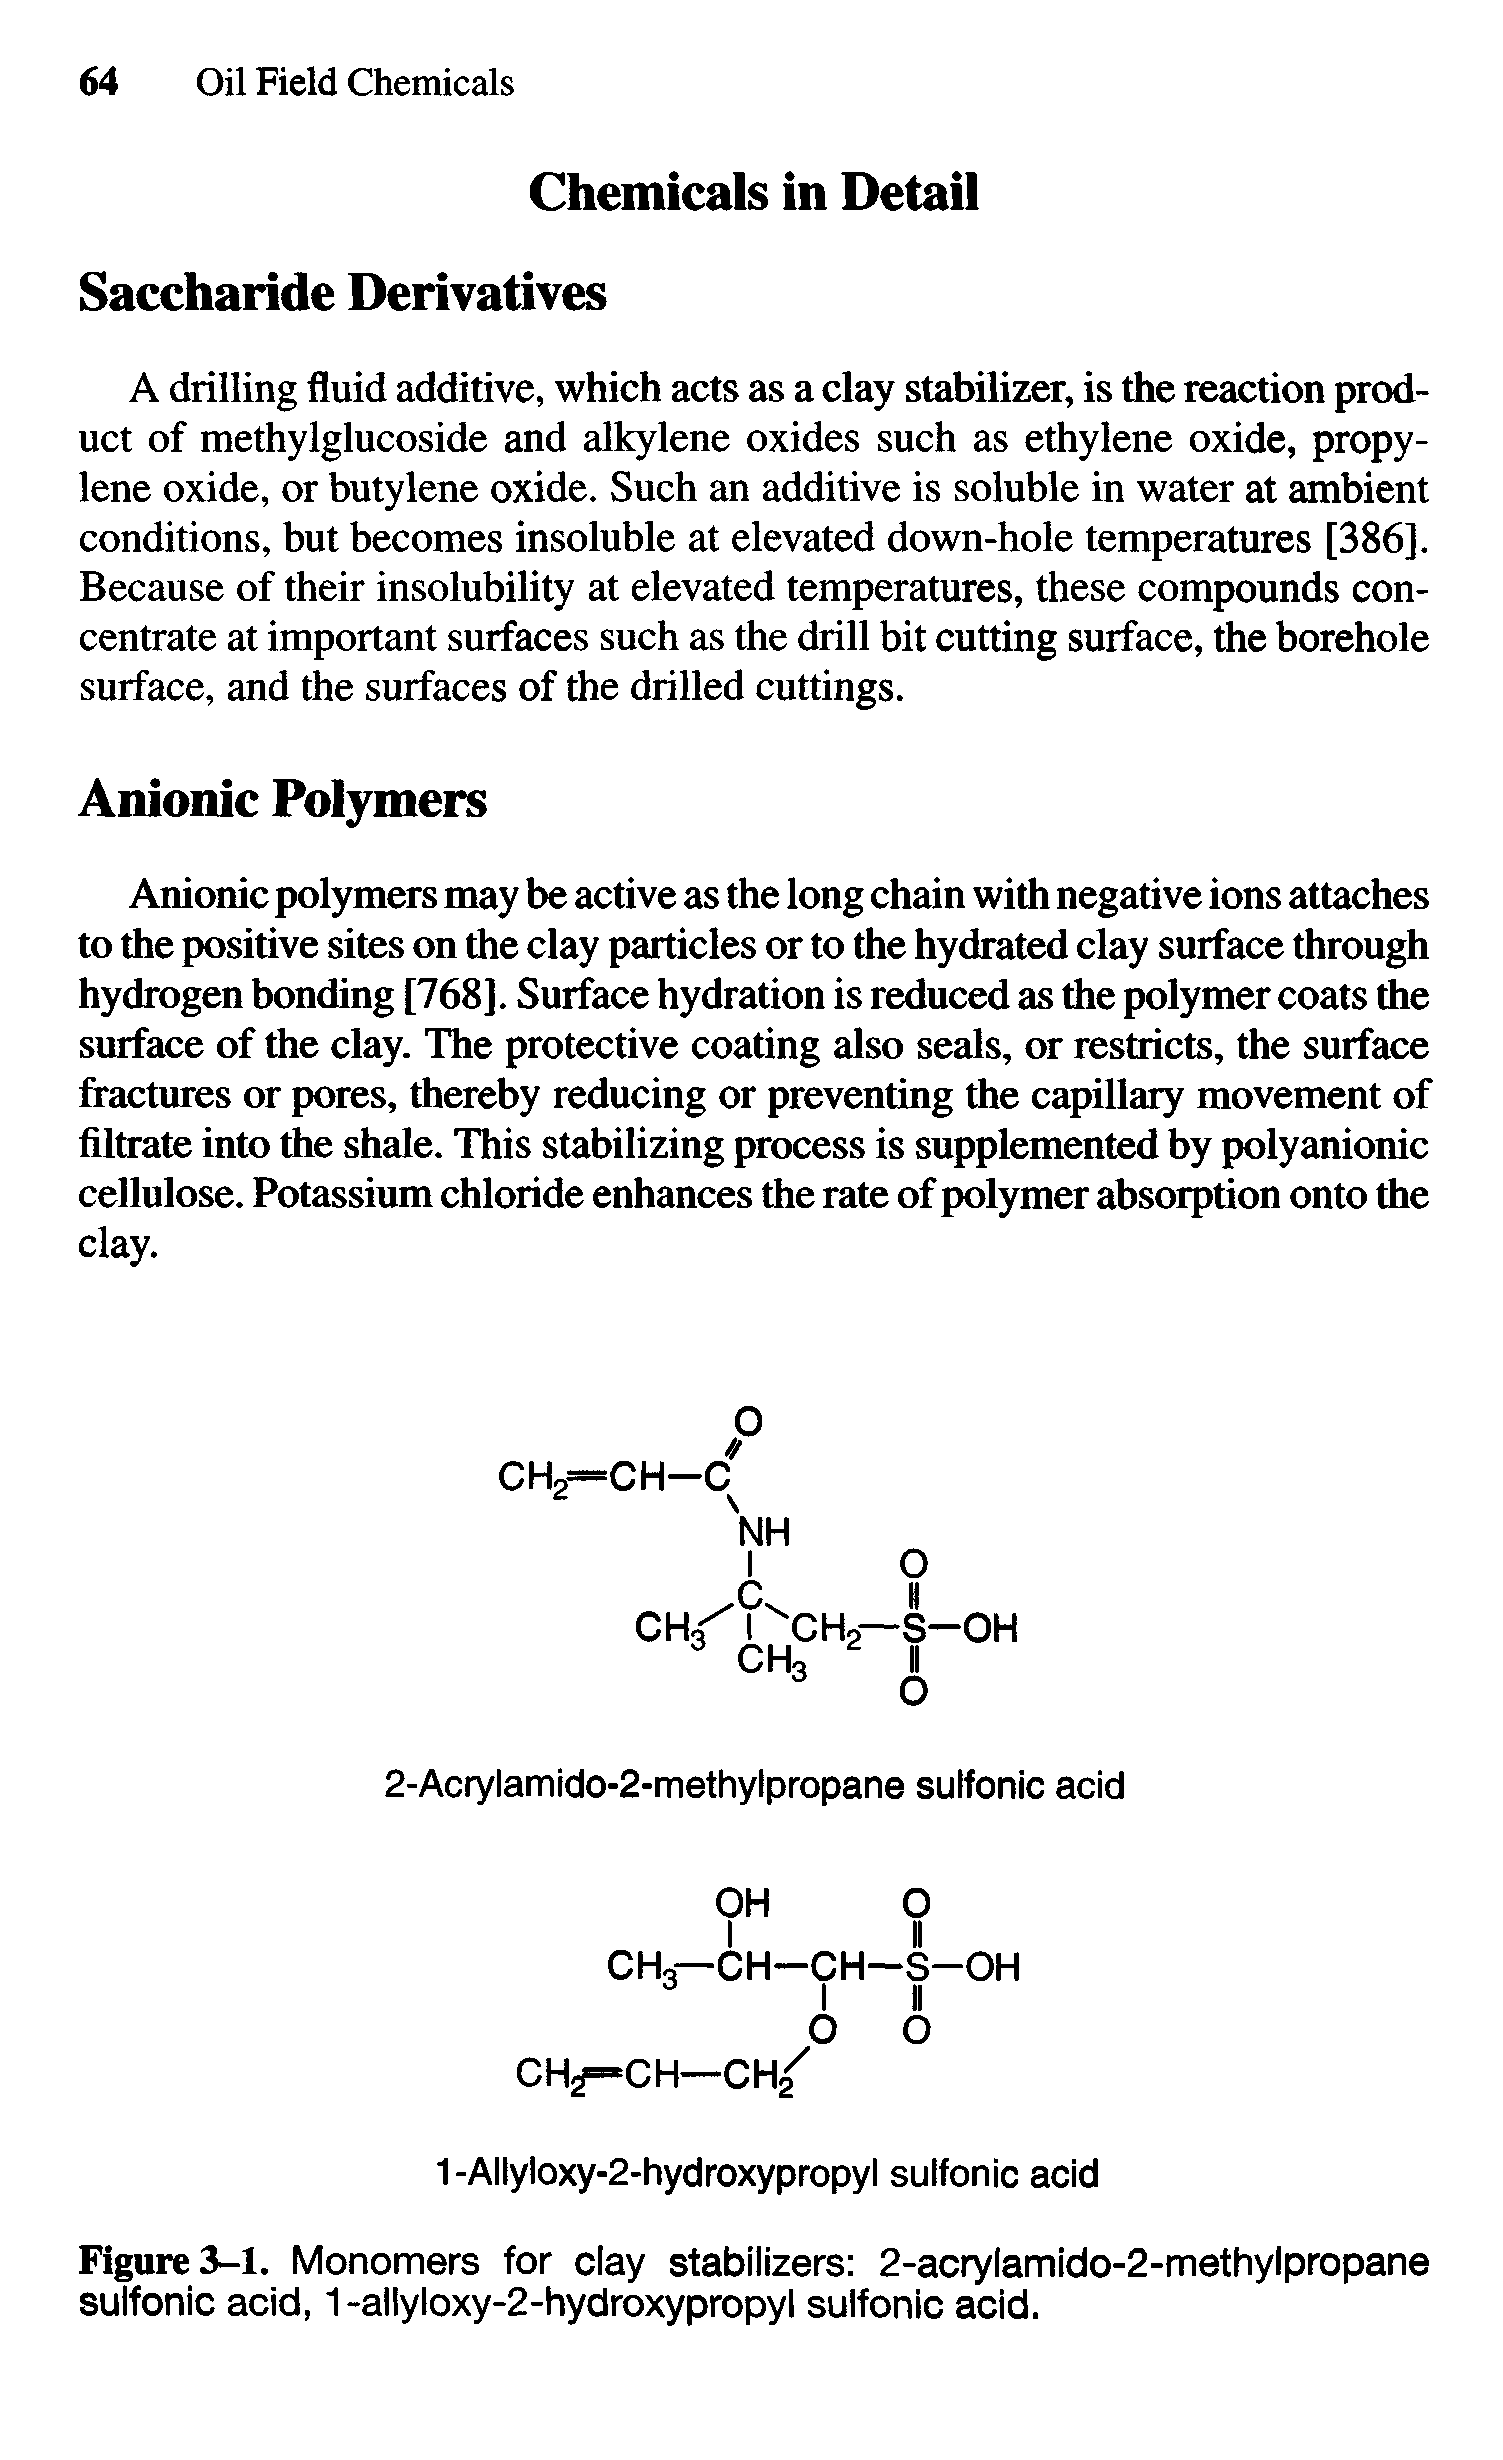 Figure 3-1. Monomers for clay stabilizers 2-acrylamido-2-methyipropane sulfonic acid, 1-allyloxy-2-hydroxypropyl sulfonic acid.